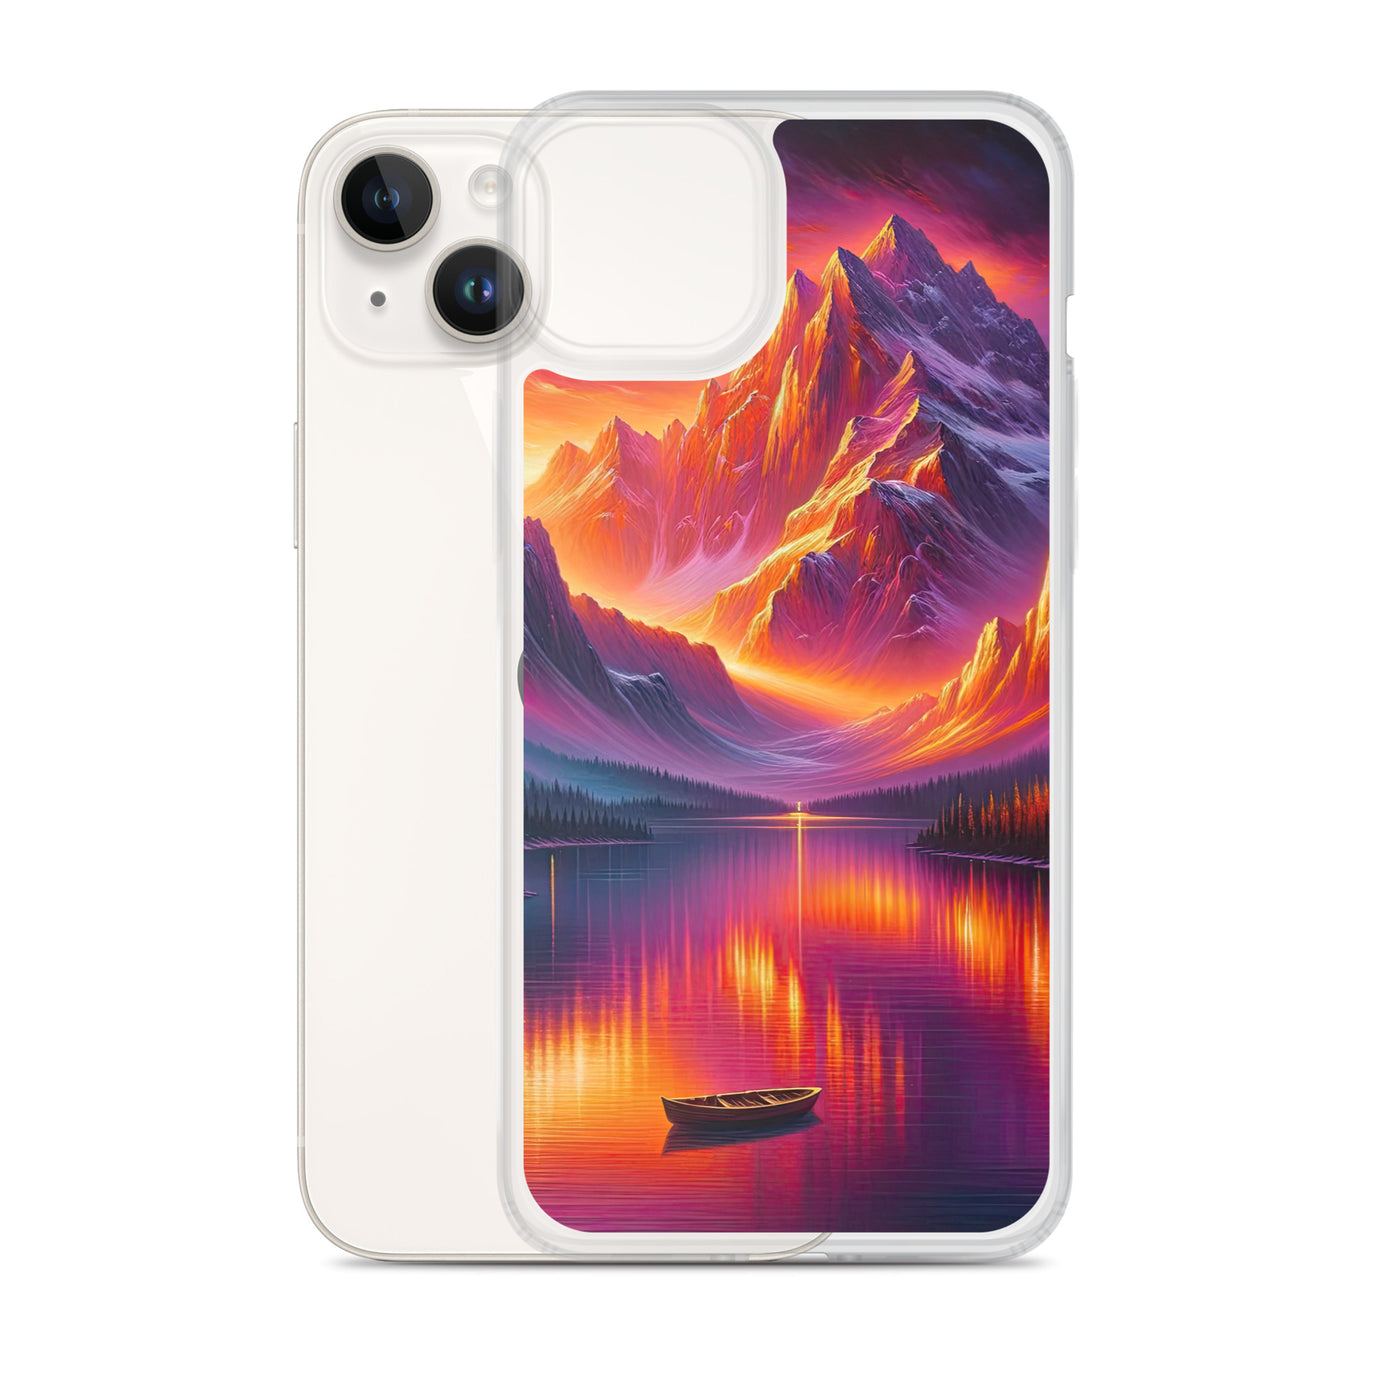 Ölgemälde eines Bootes auf einem Bergsee bei Sonnenuntergang, lebendige Orange-Lila Töne - iPhone Schutzhülle (durchsichtig) berge xxx yyy zzz